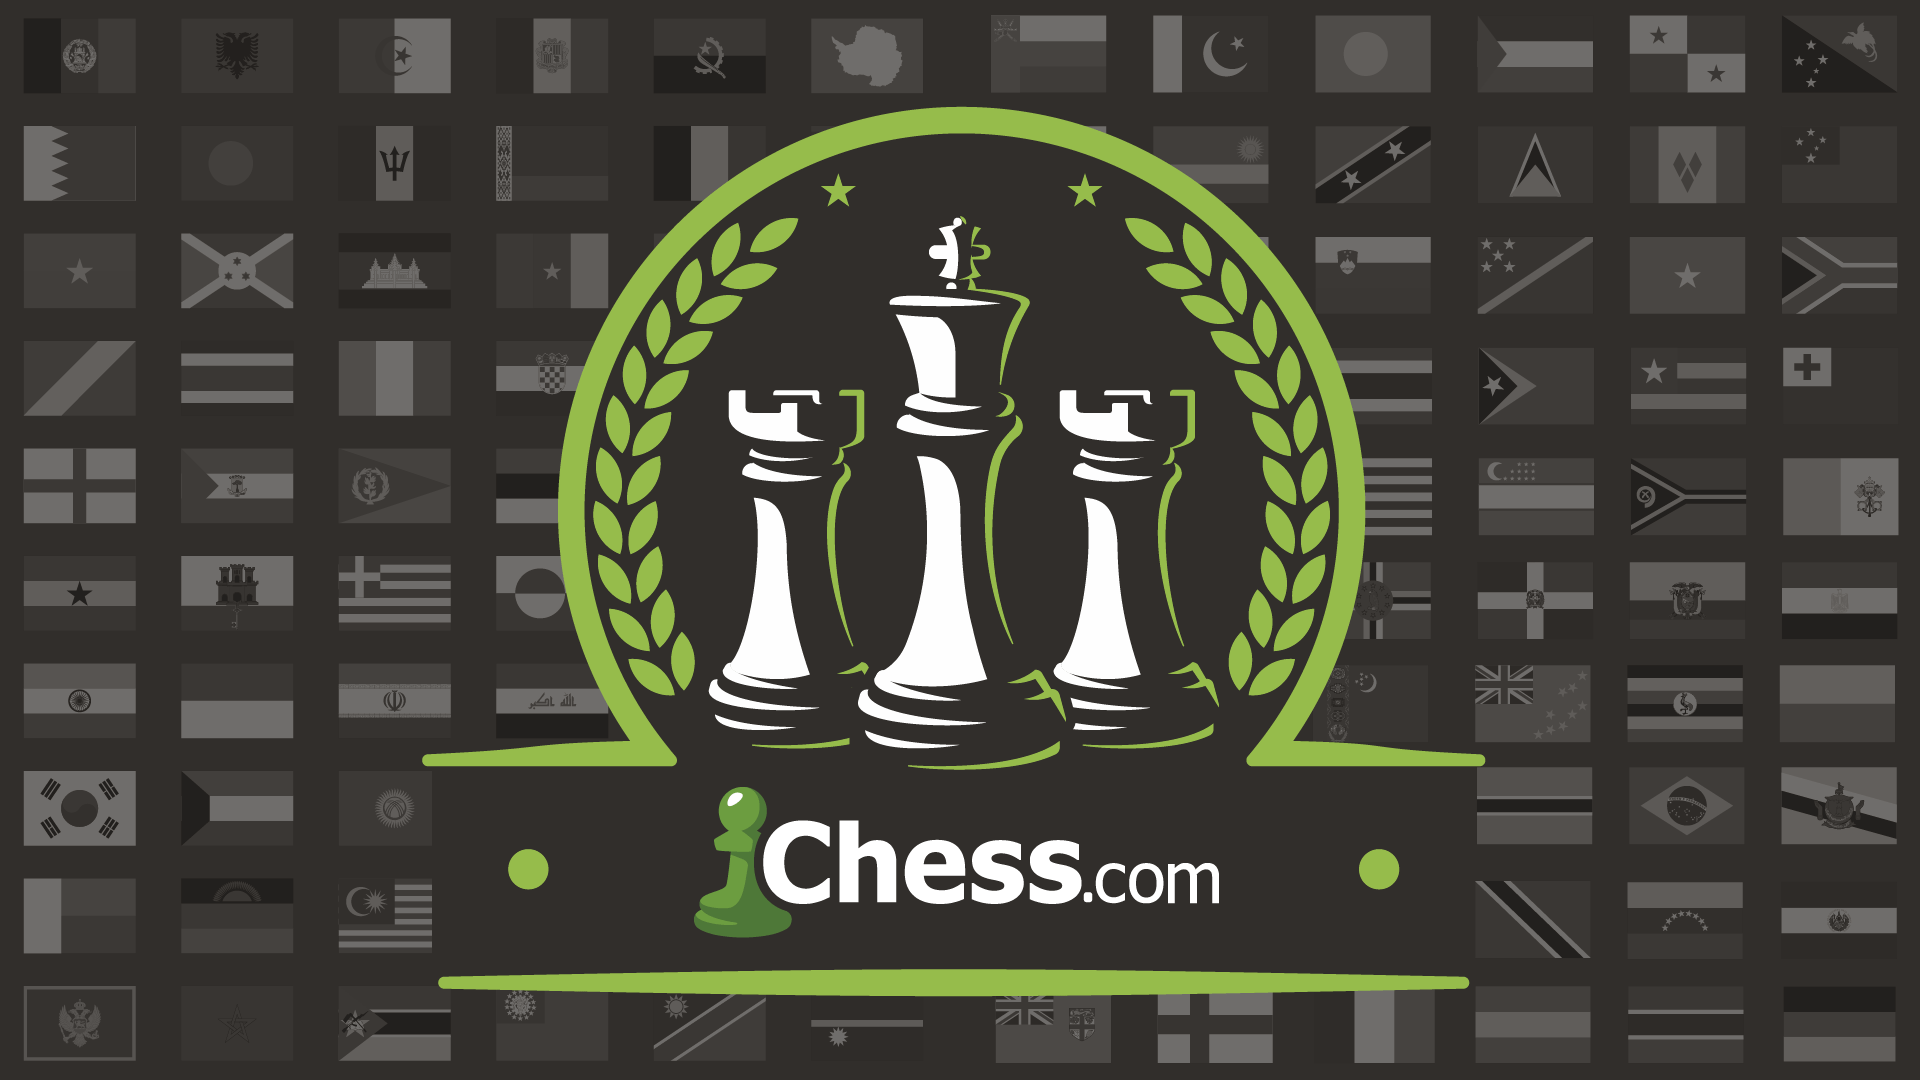 Última Divisão Chess Club - clube de xadrez 